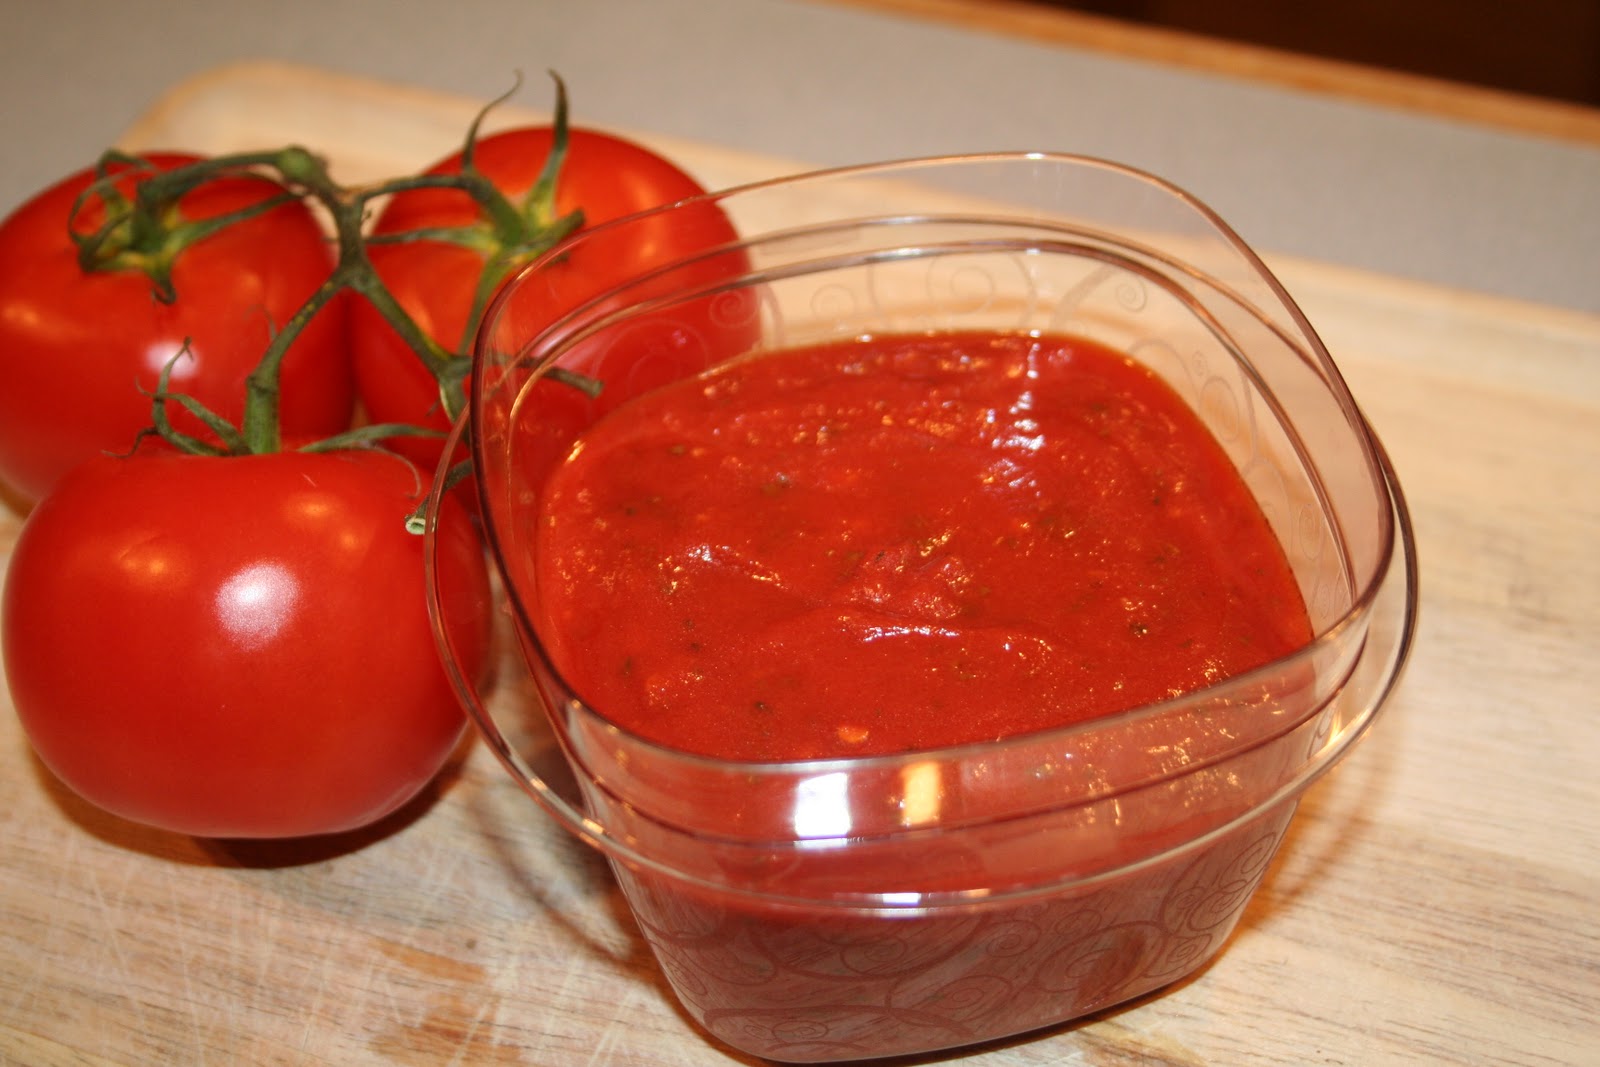 томатный соус из помидоров для пиццы в домашних условиях фото 12